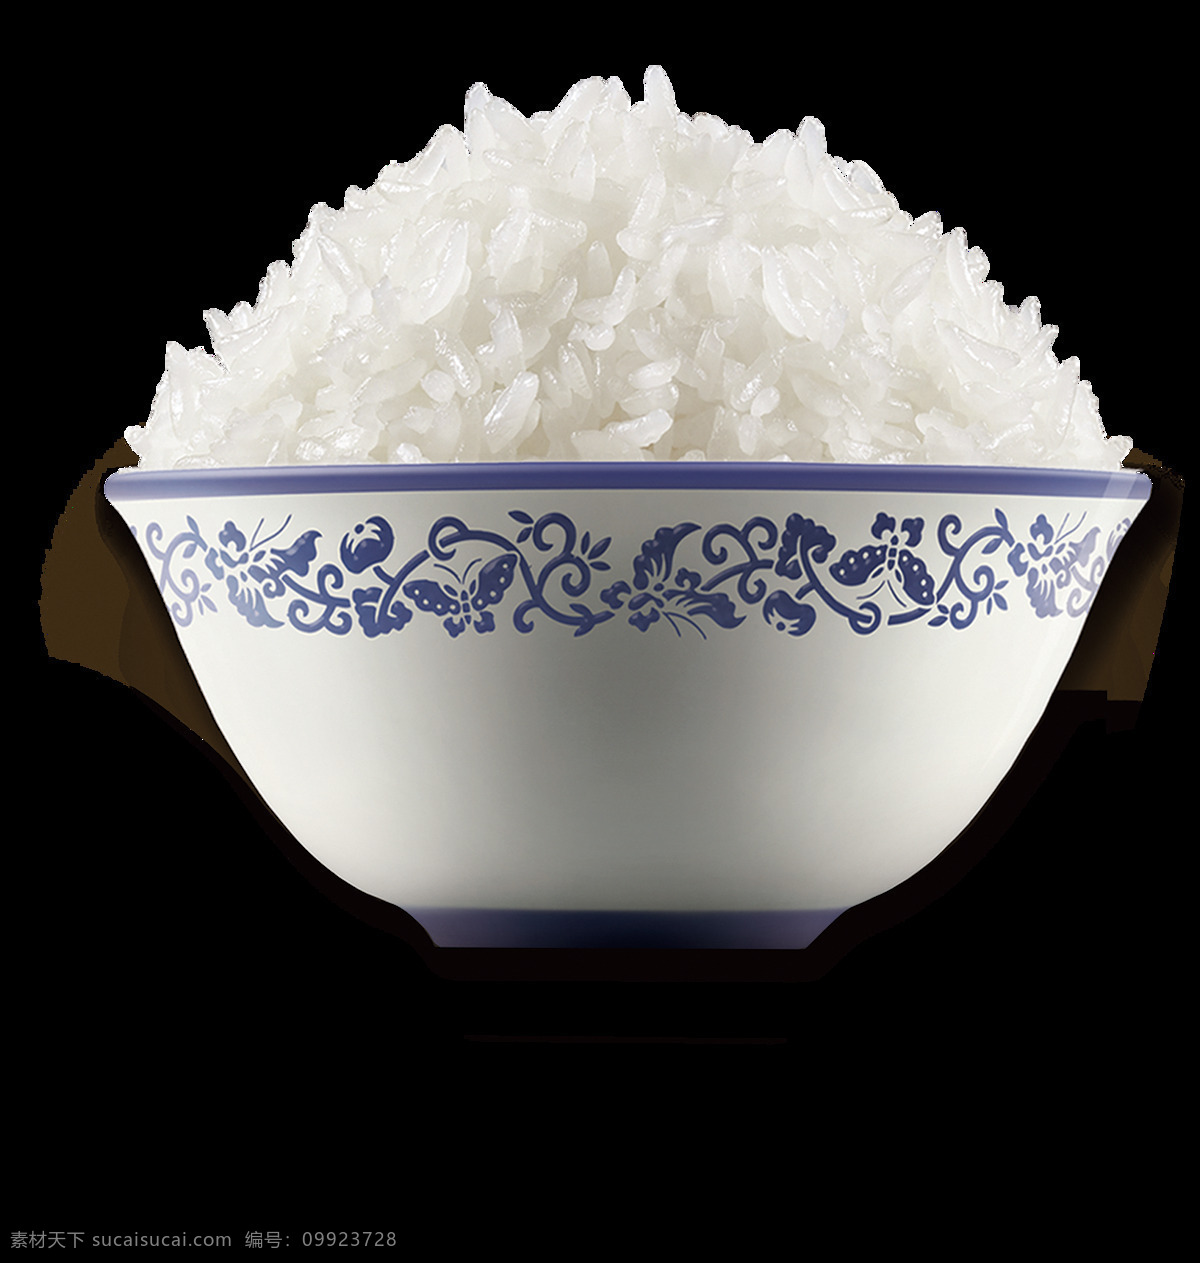 大米 饭 碗 包装 米饭 动漫动画